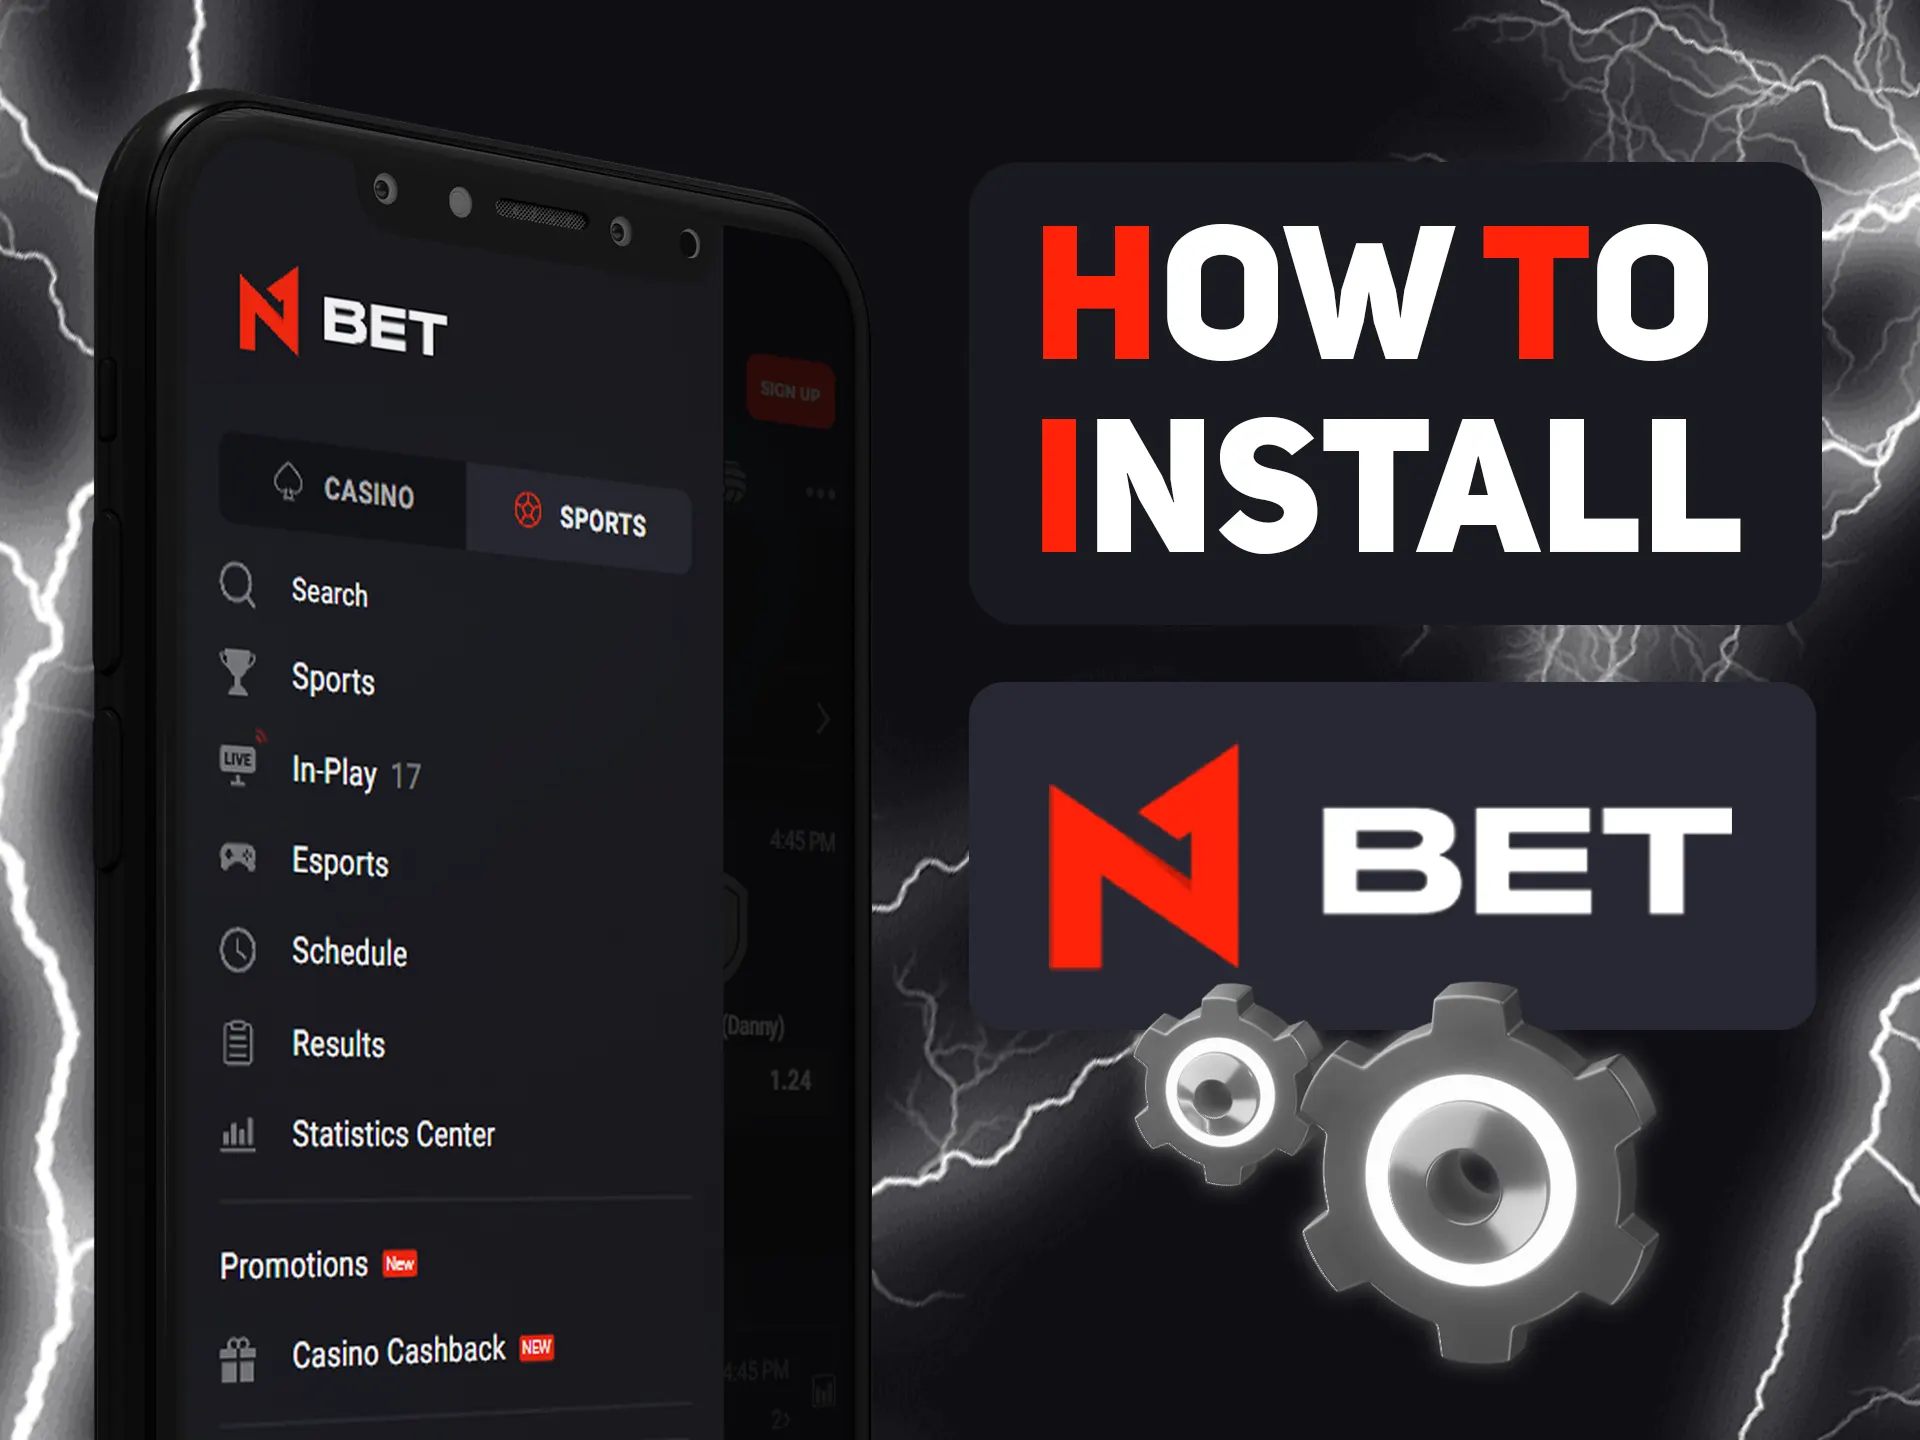 Installation of N1bet app is very simple.